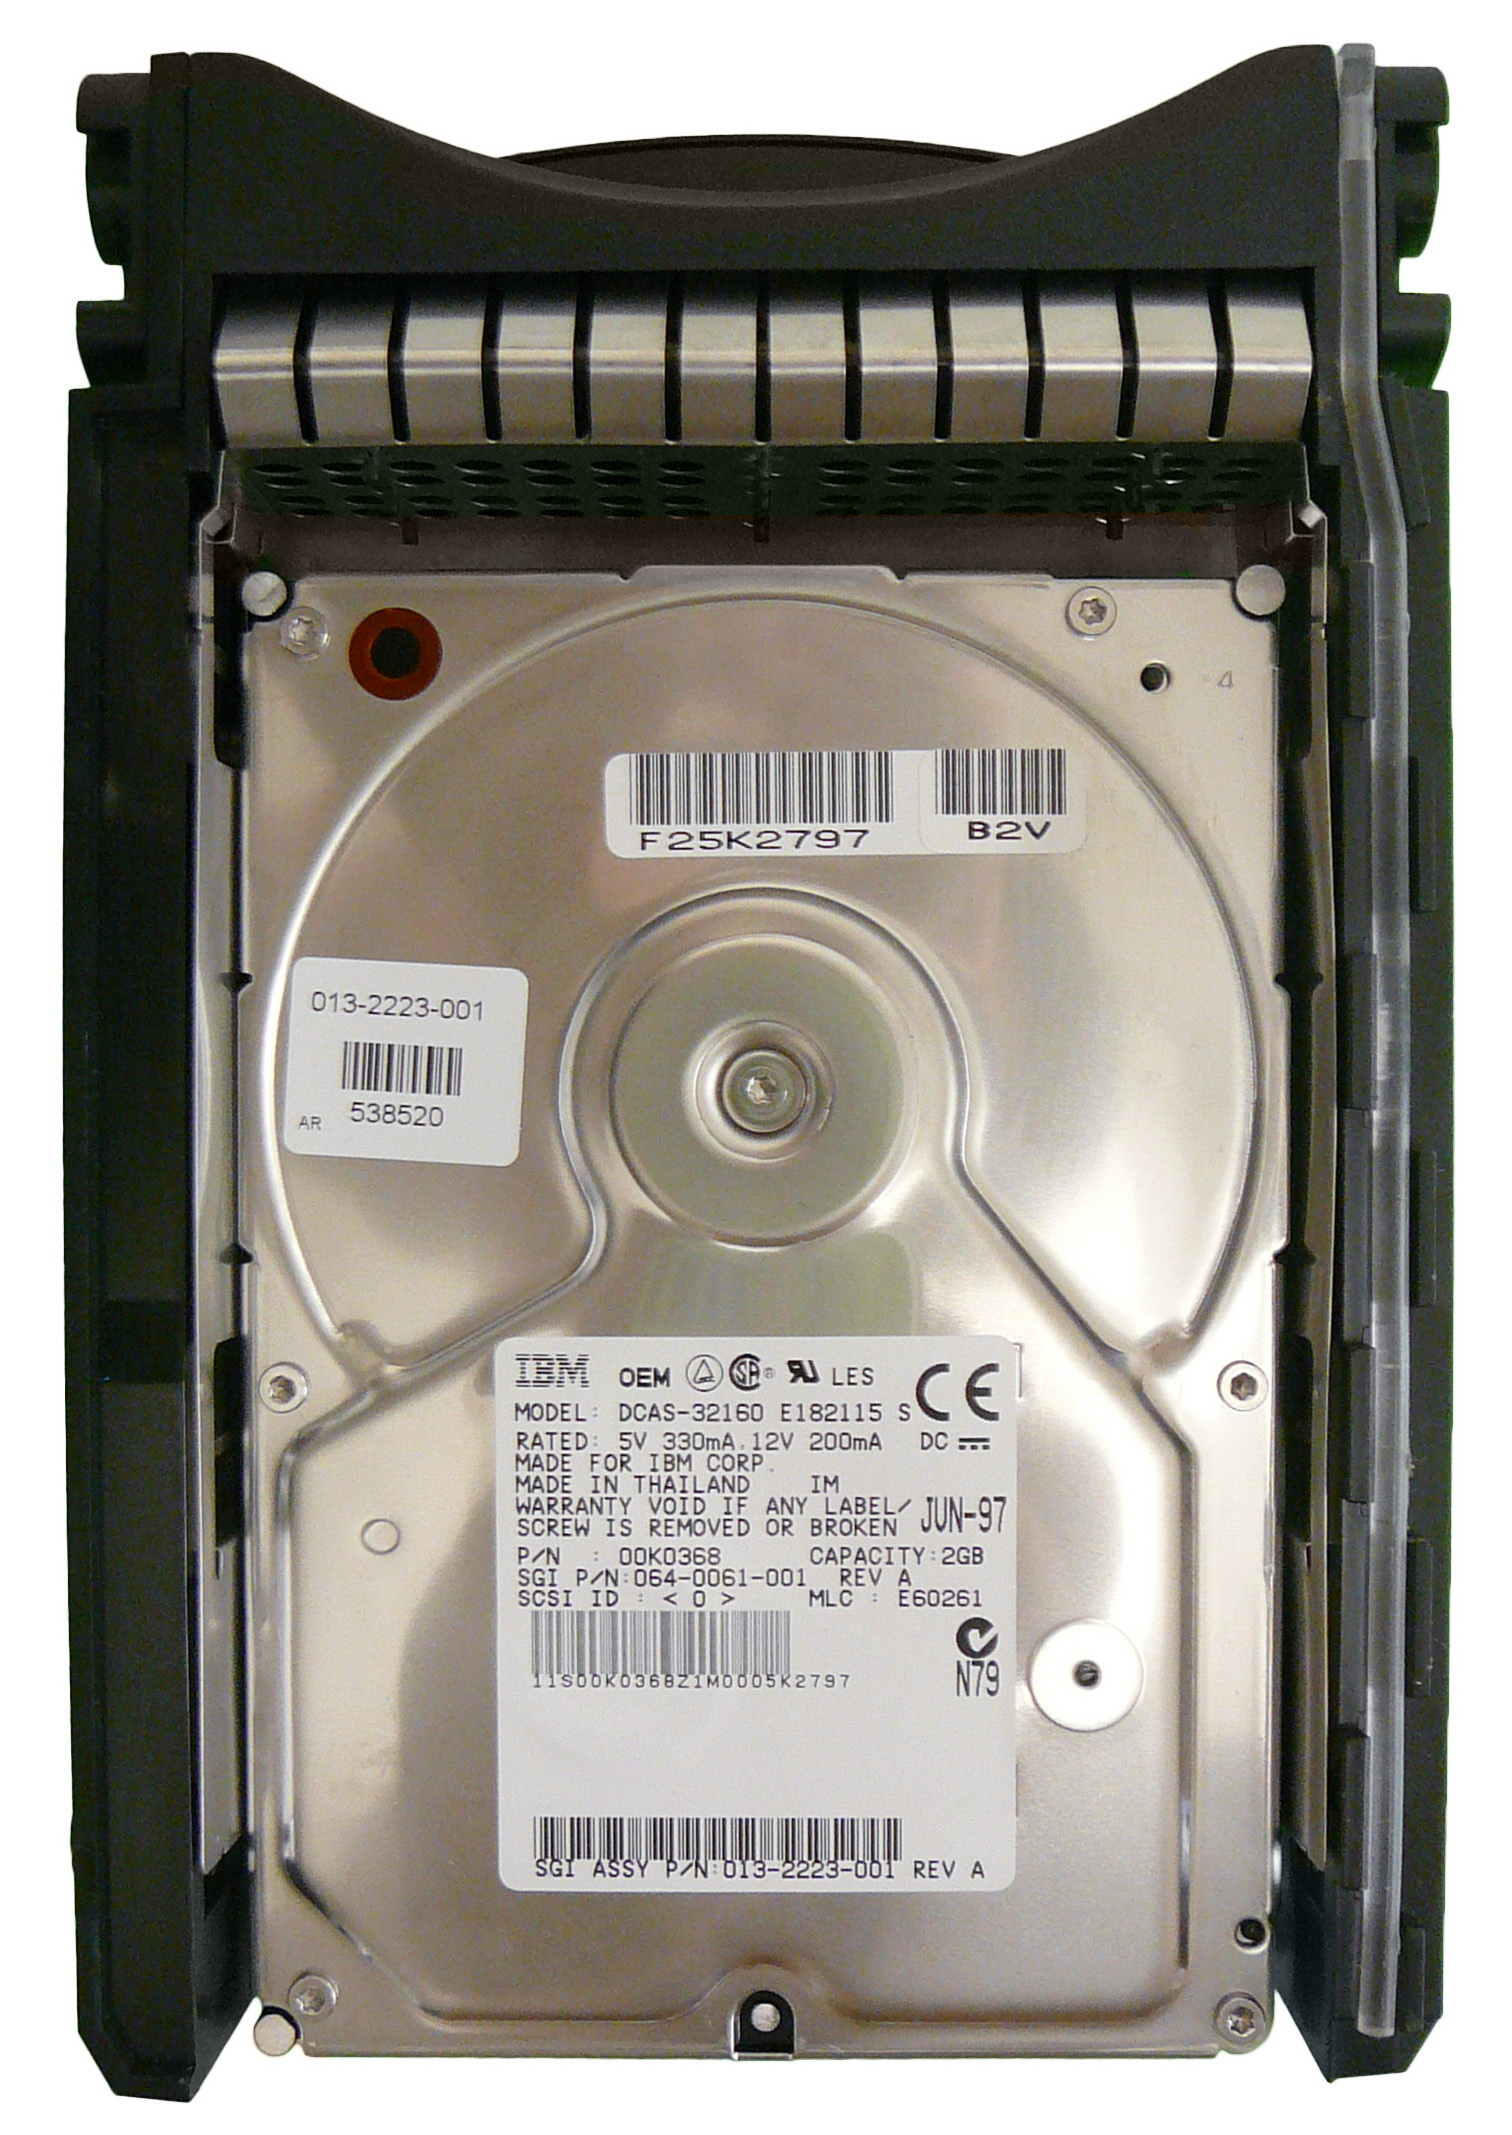 00K0368 IBM Ultrastar 2ES 2.1GB 5400RPM Ultra SCSI 80-Pin 448KB Cache 3.5-inch Internal Hard Drive